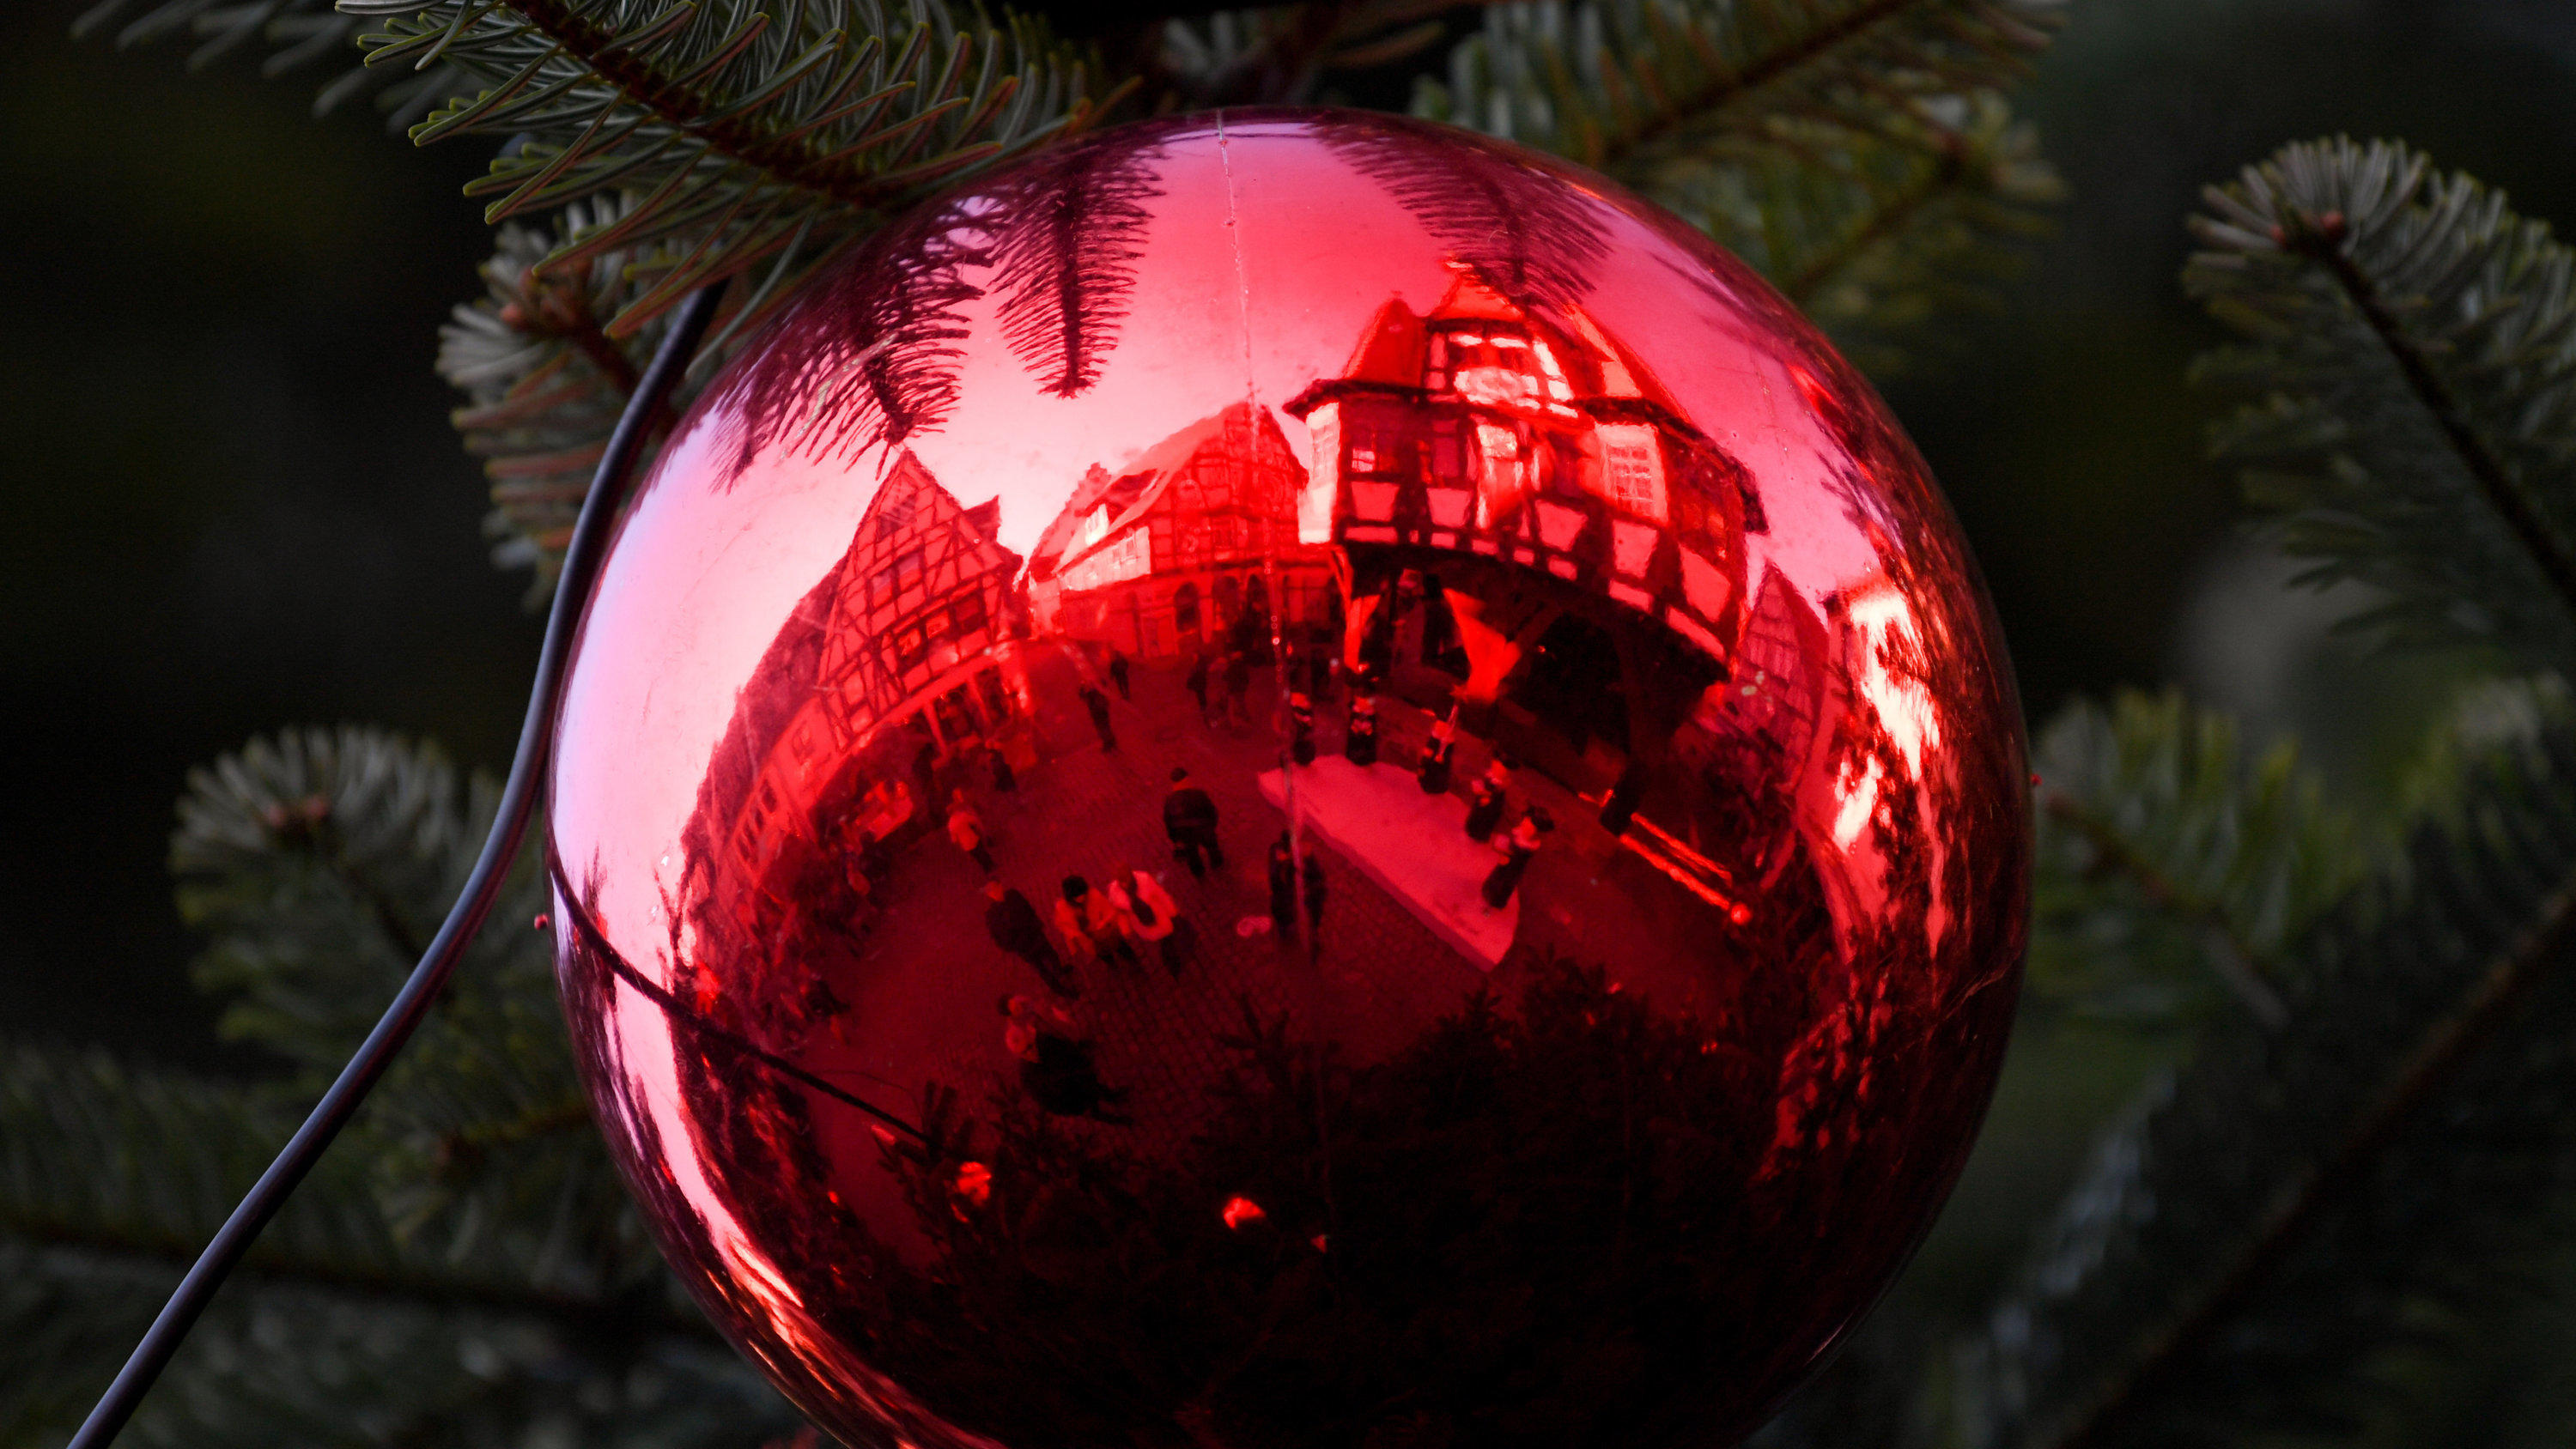 Deko-Kugel hängt in einem Weihnachtsbaum